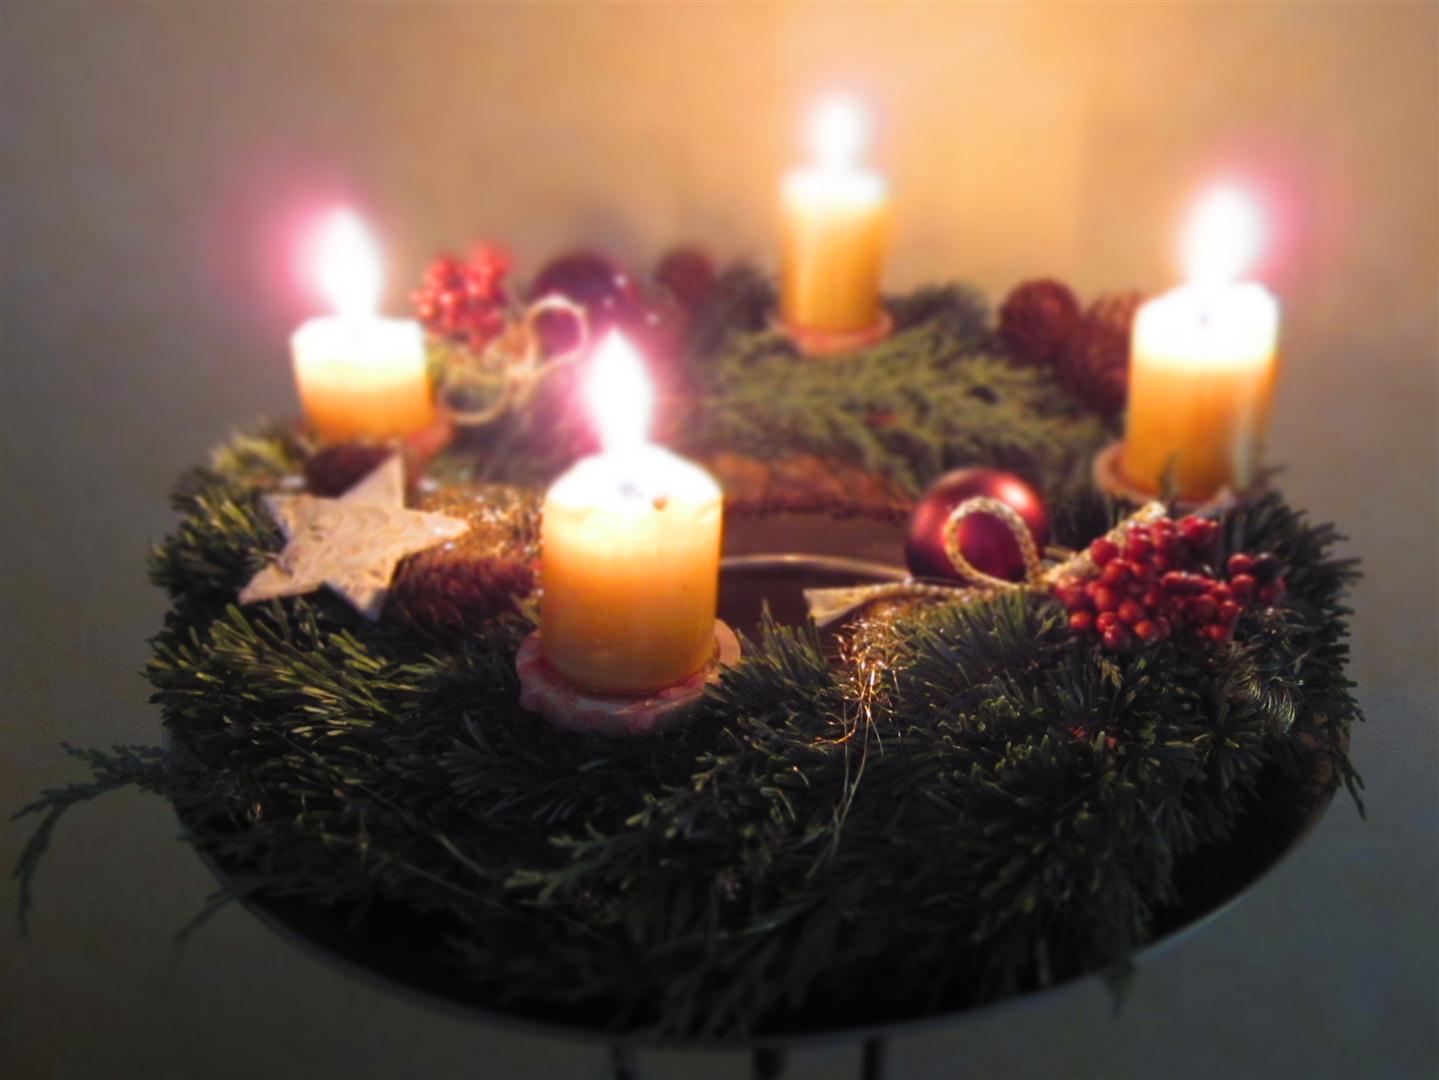 Adventskranz mit 4 brennenden Kerzen